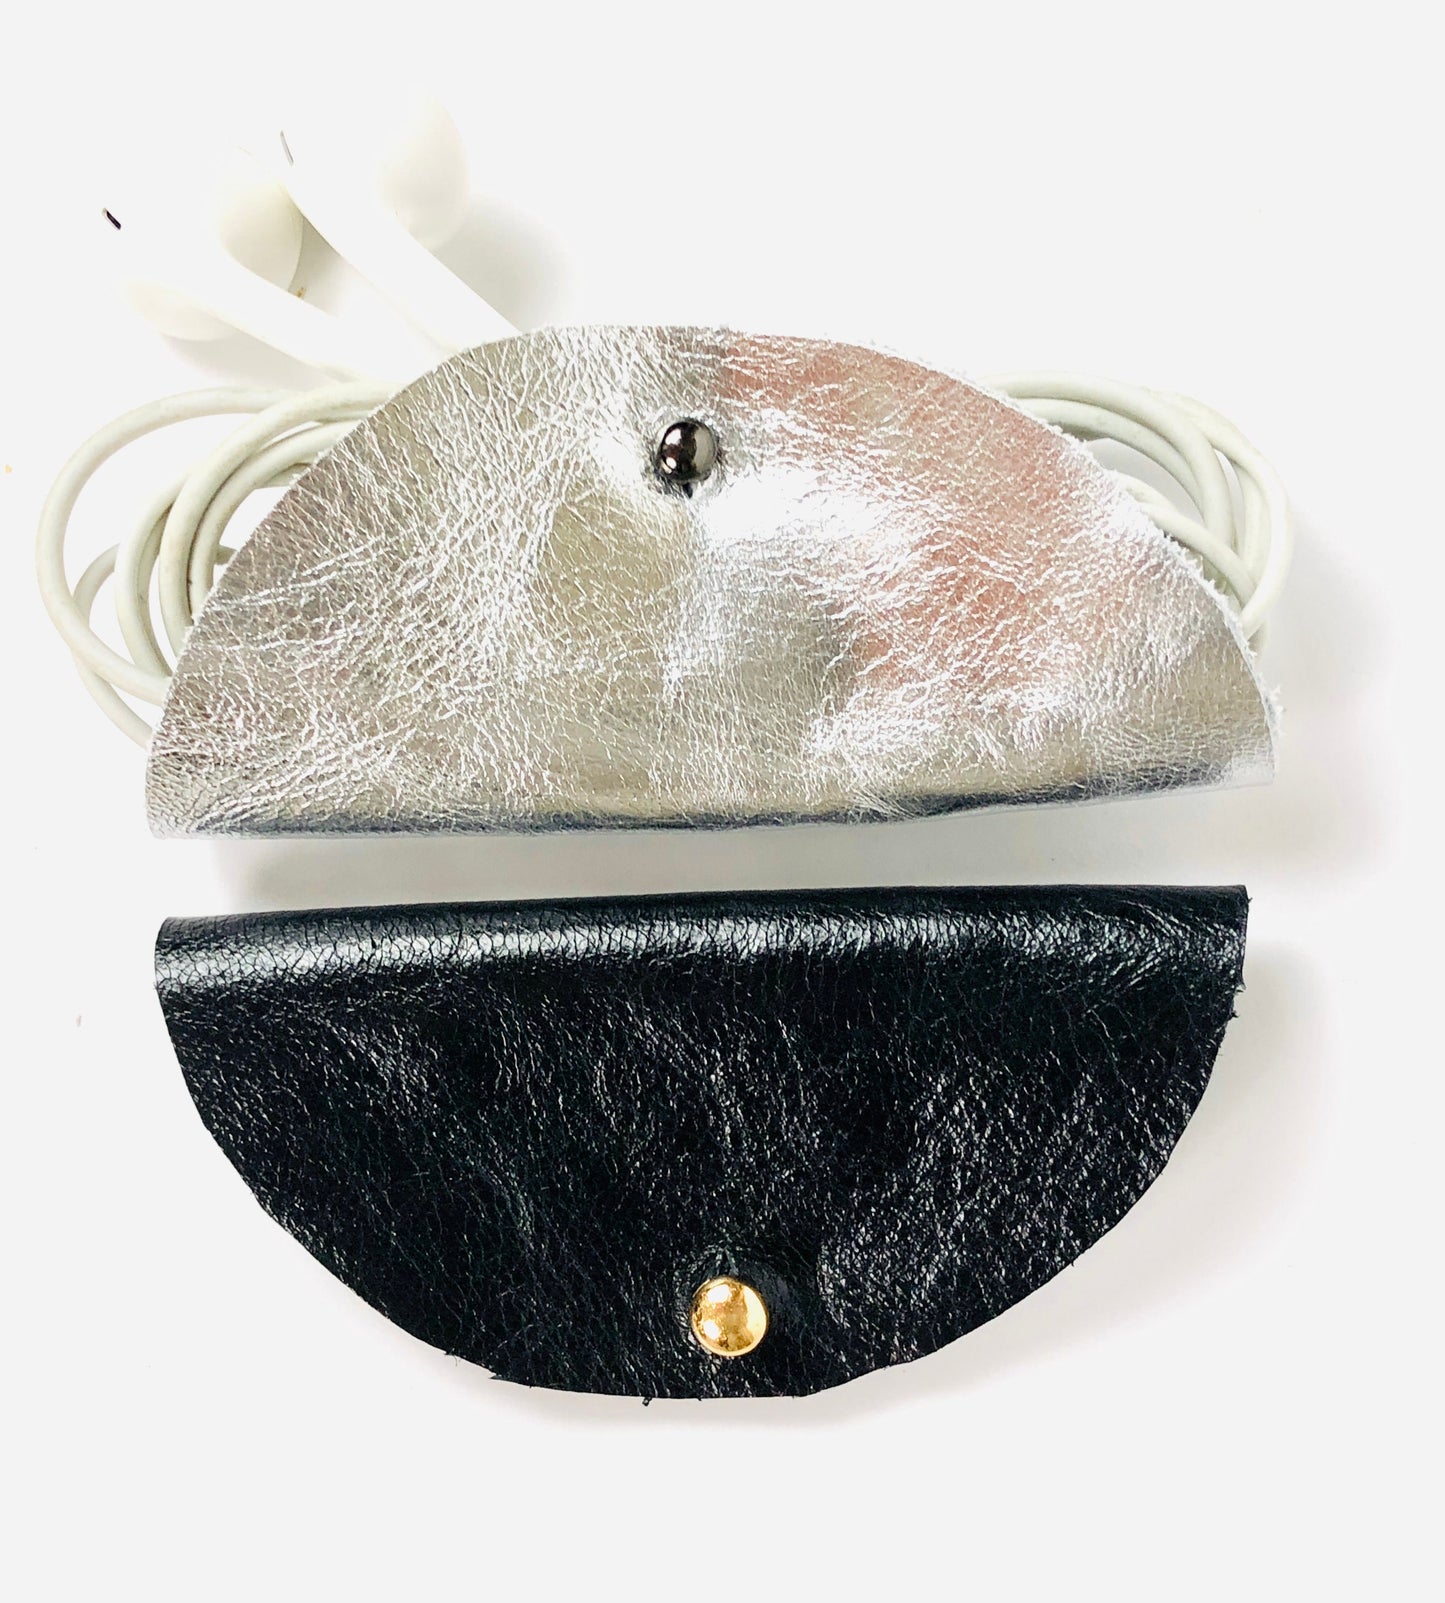 Leather headphone range - leather headphone pouch - wired headphone case - leather phone cable holder